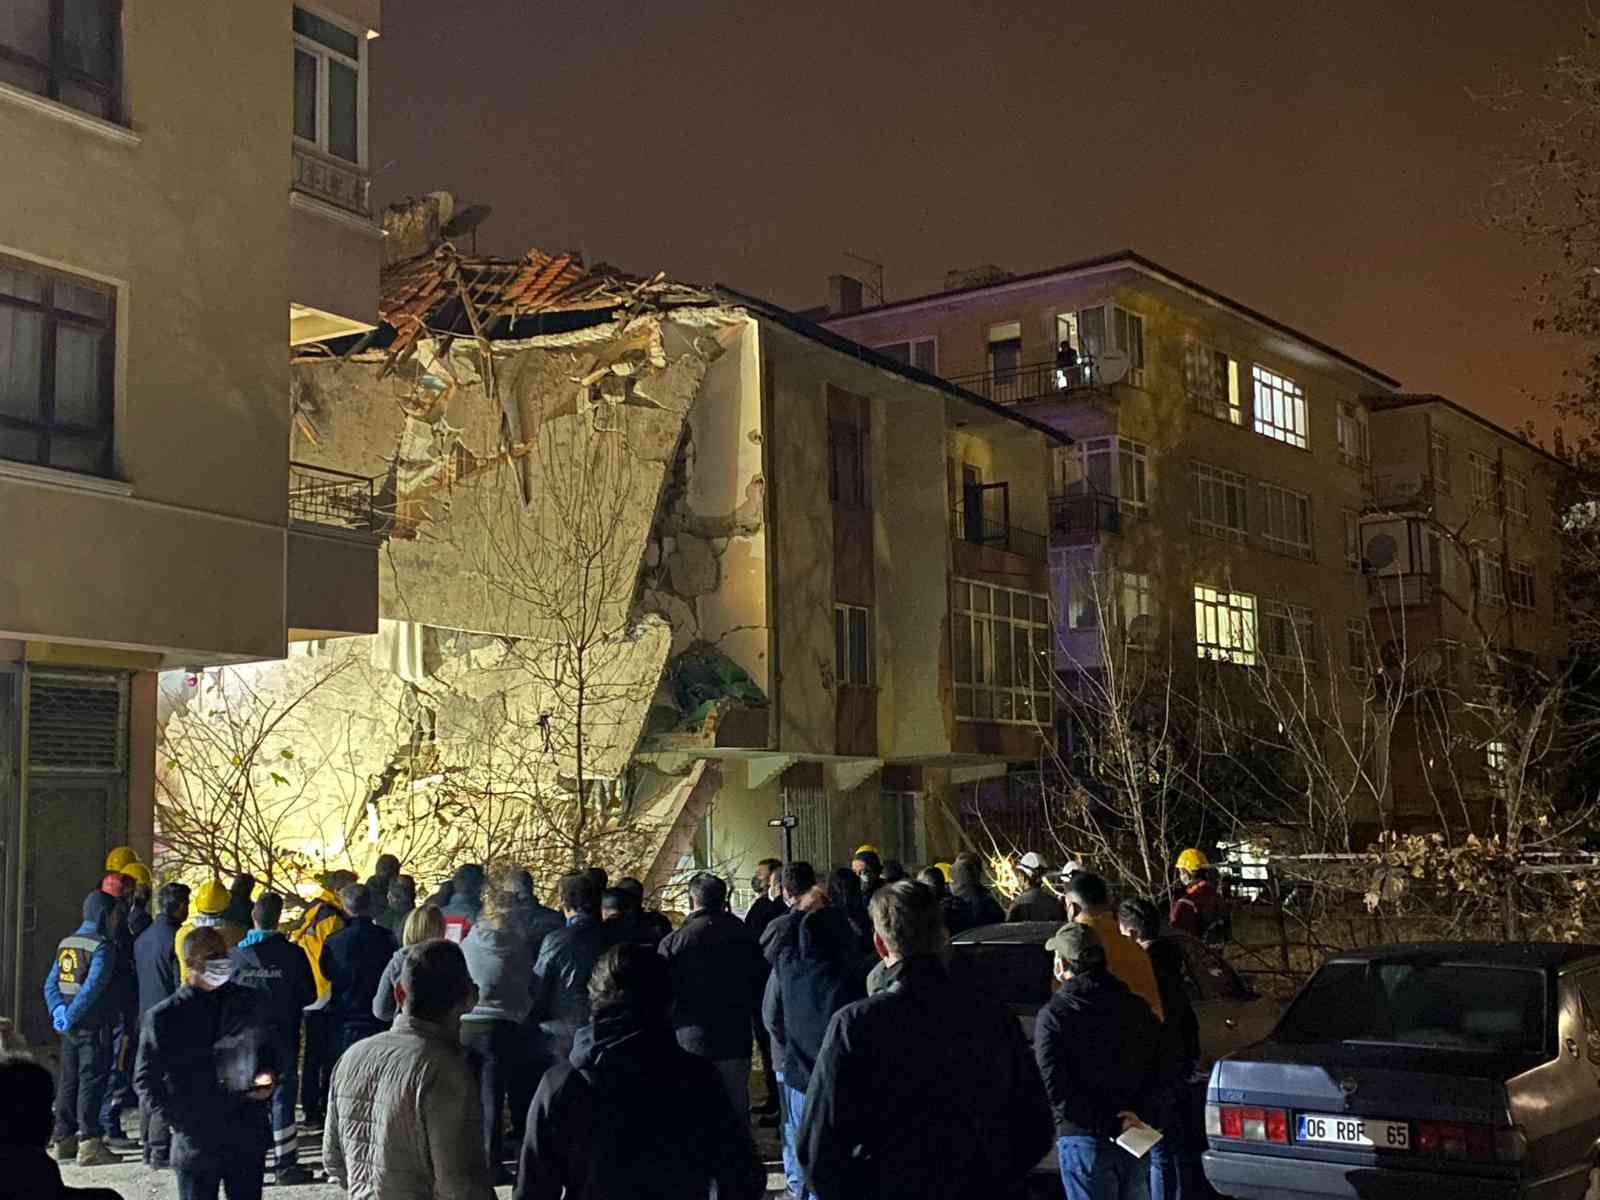 Ankara’da bir apartmanda meydana gelen patlamada, 3’ü ağır 4 kişi yaralanırken 2 kişi hayatını kaybetti #ankara